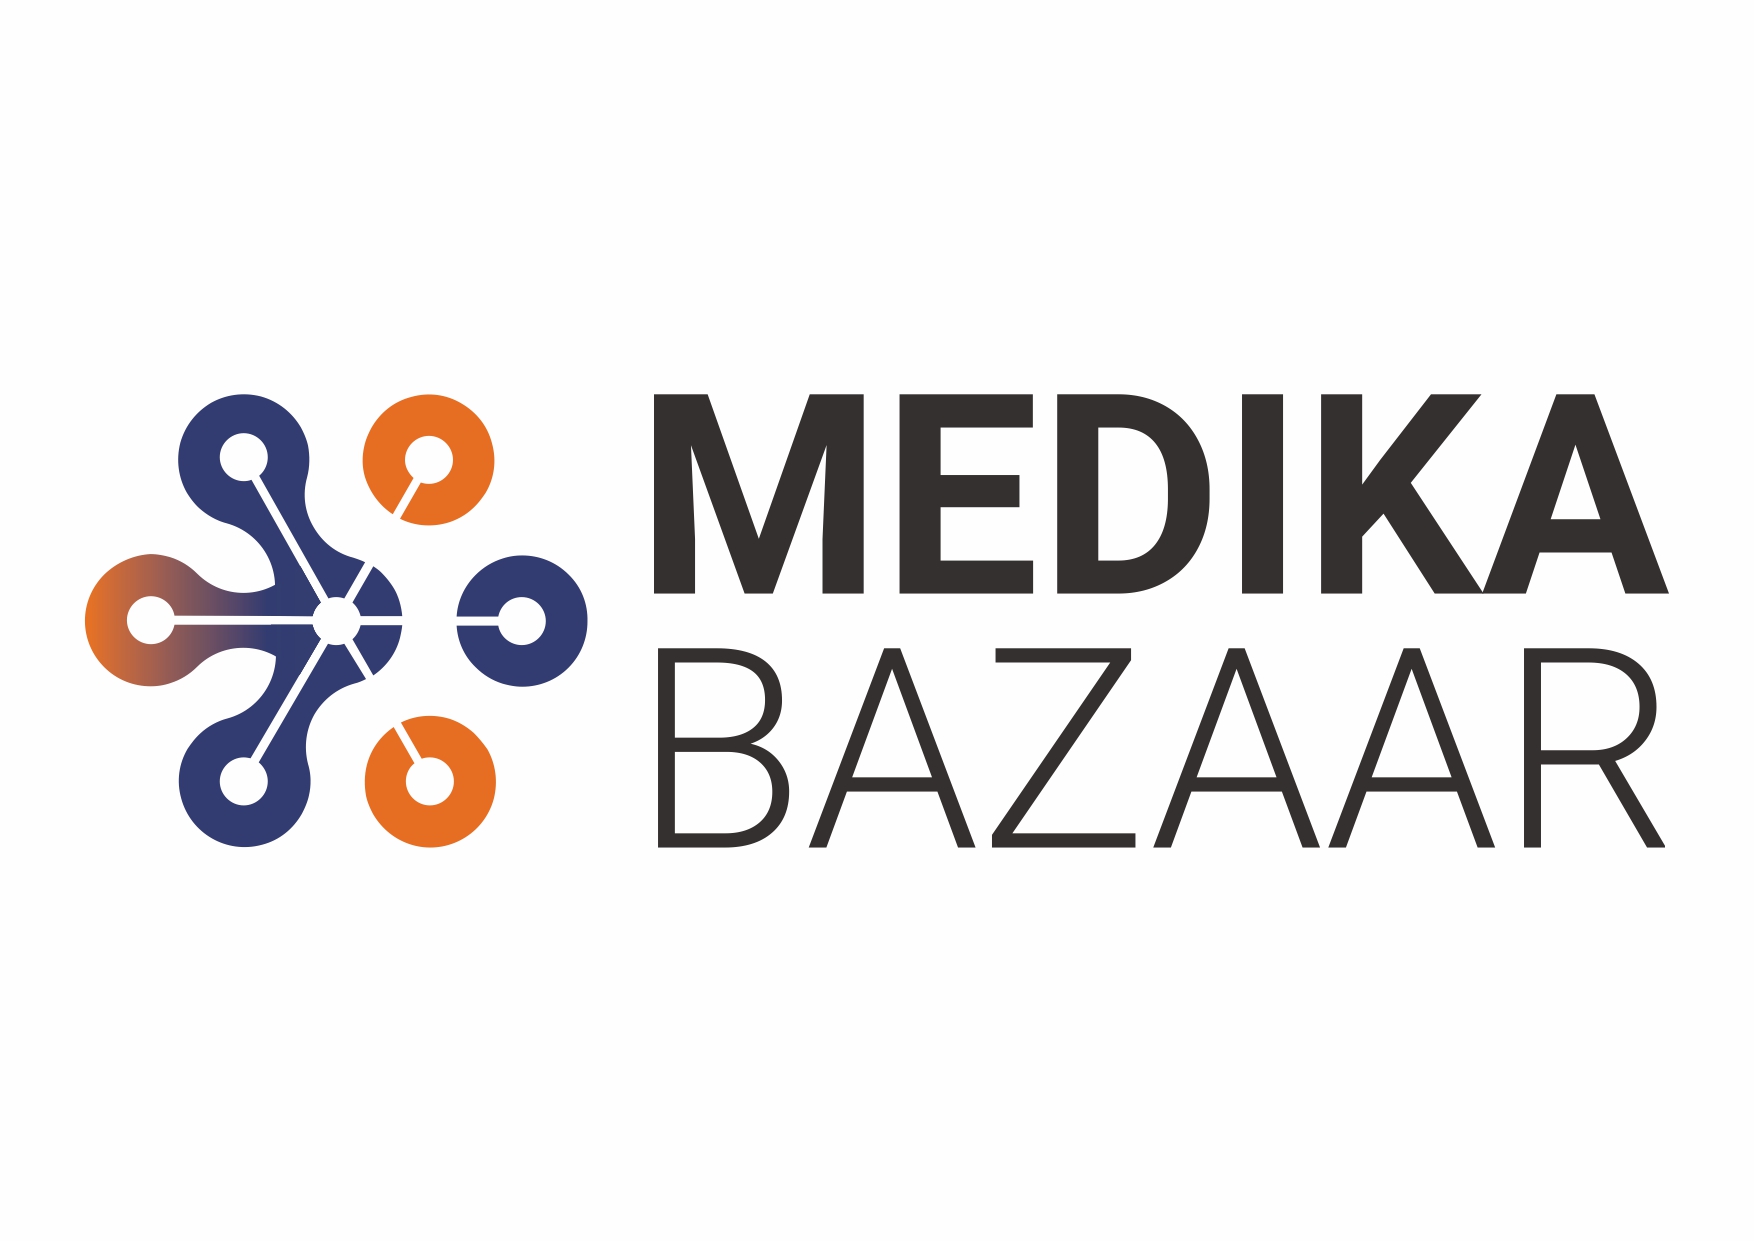 medika bazaar